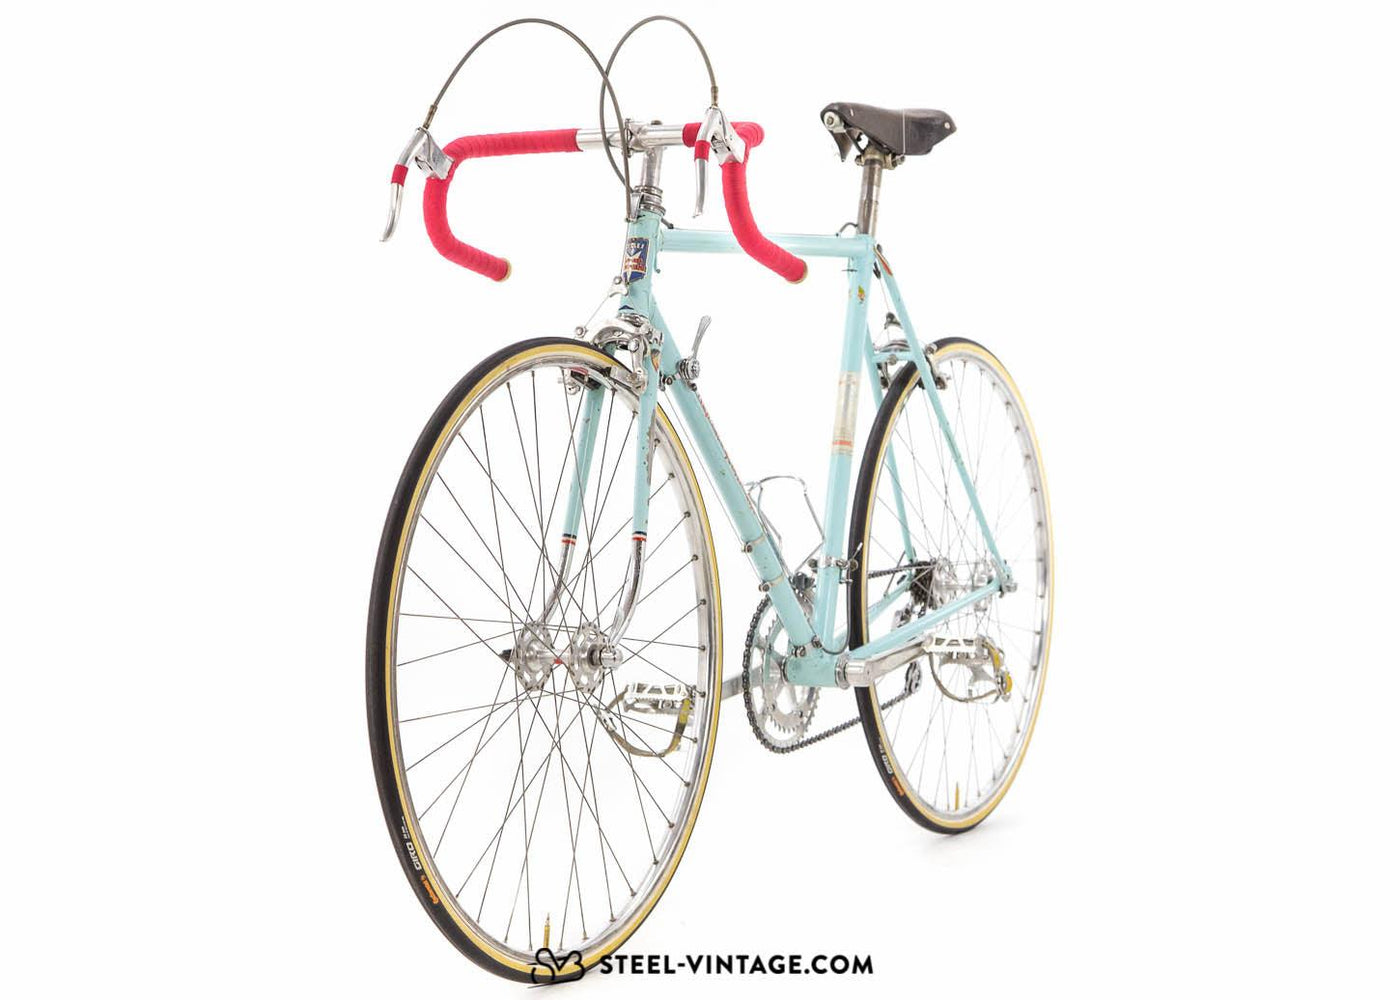 Raphael Geminiani Rare Road Bike 1960s - Steel Vintage Bikes